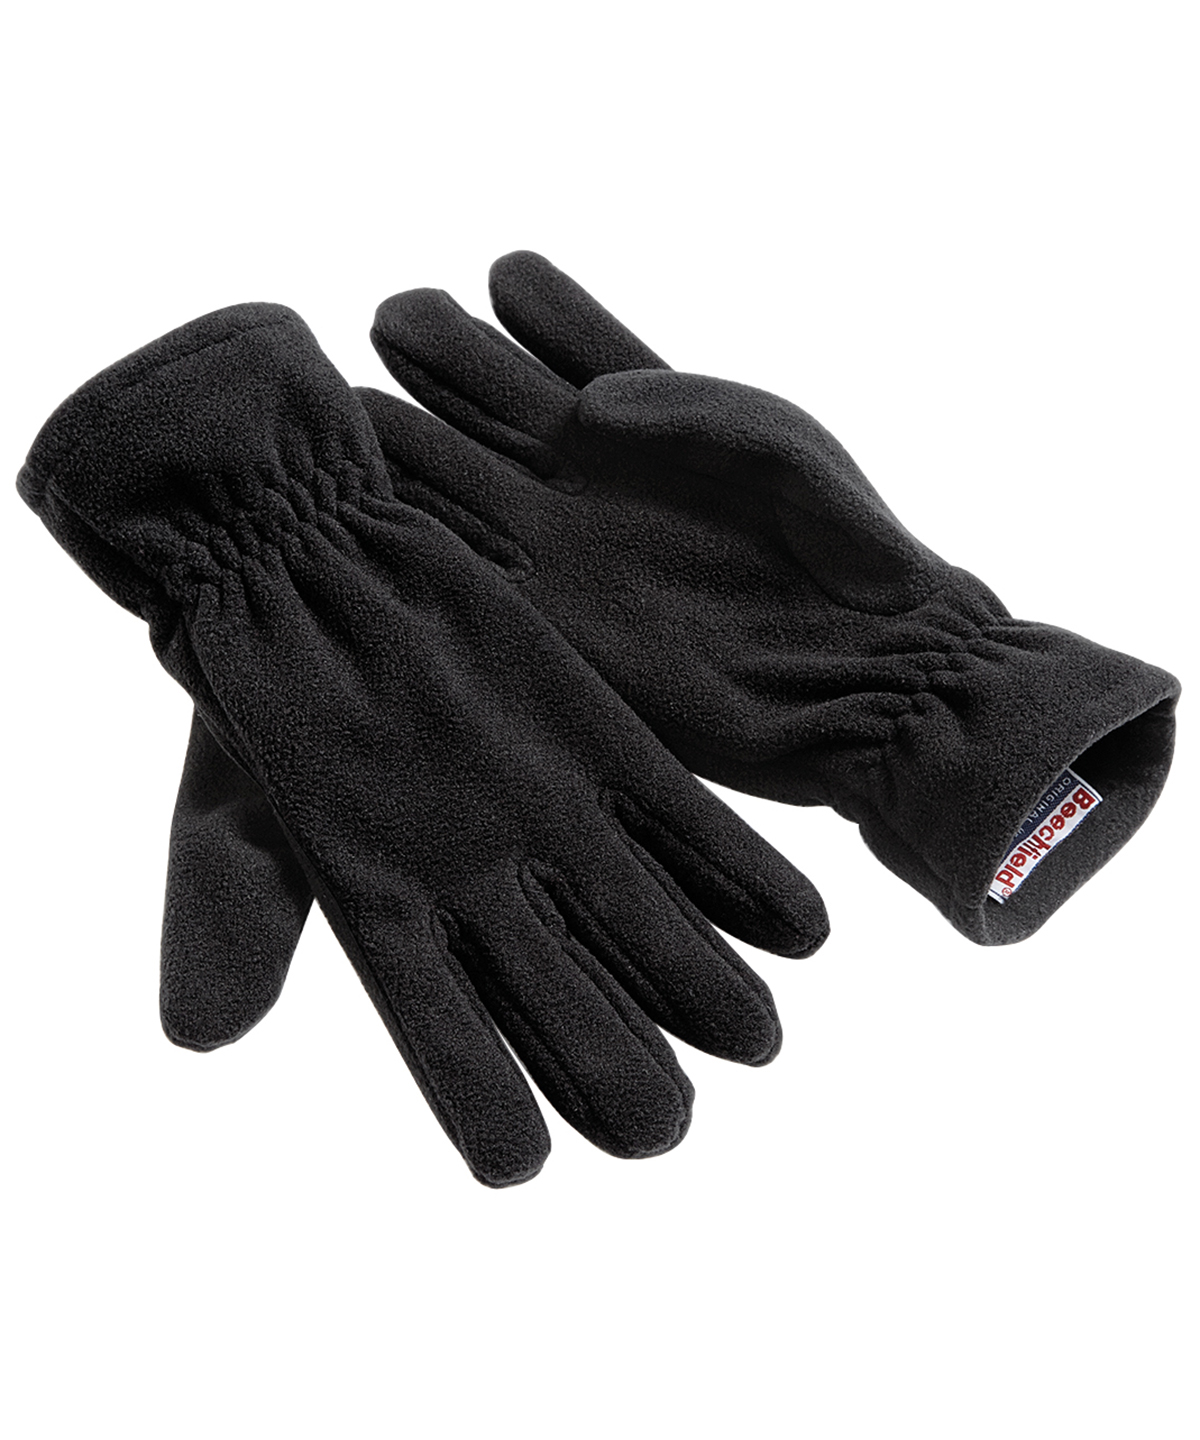 Suprafleece Alpine Gloves Black Size MediumLarge